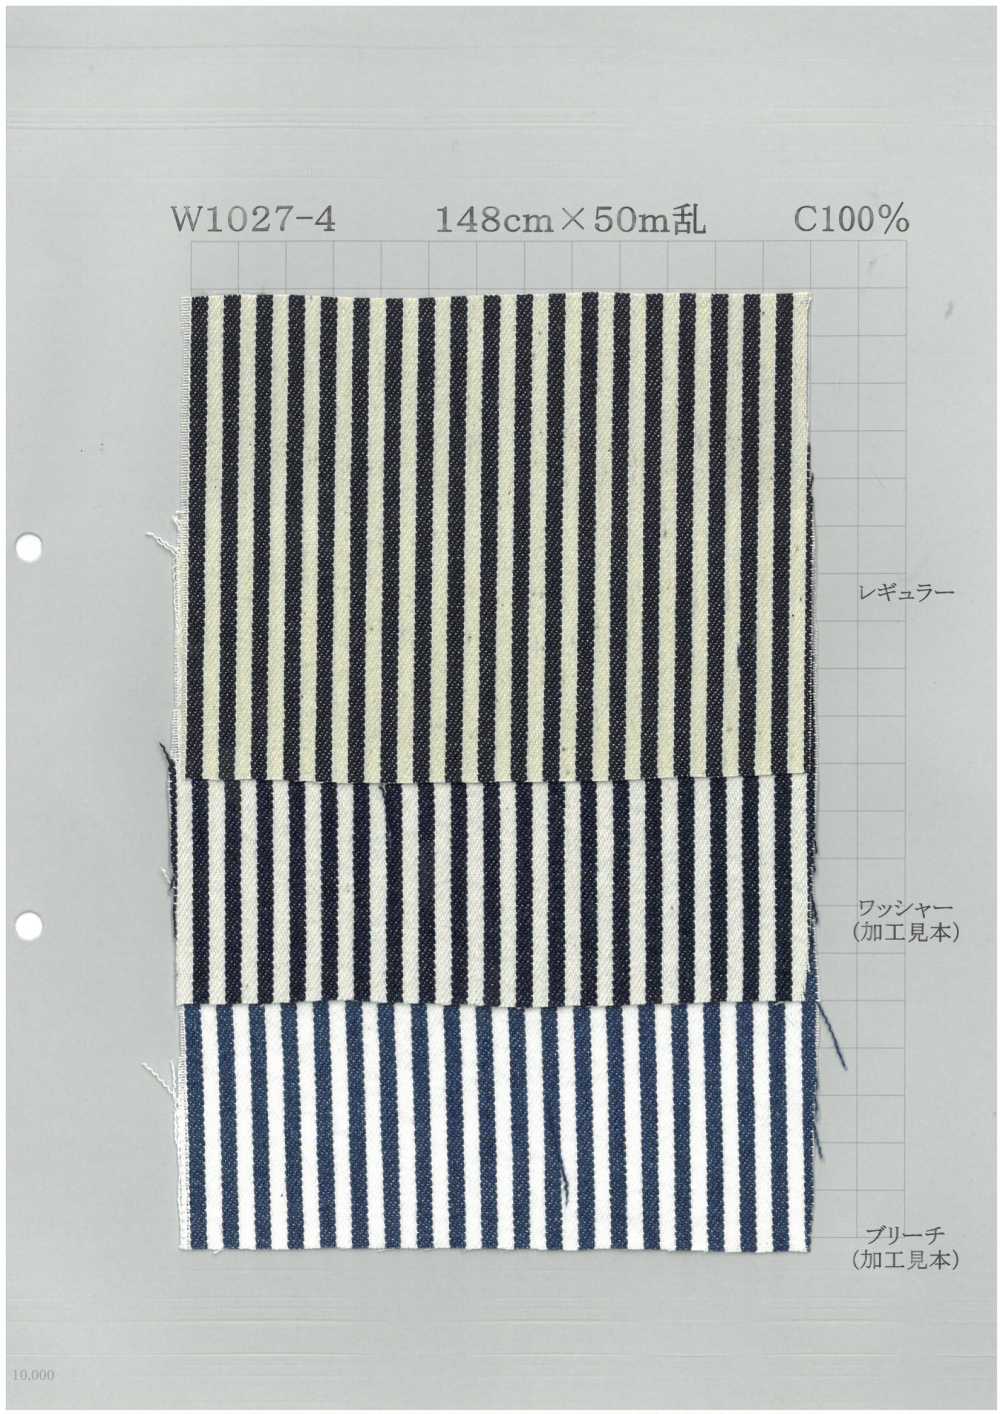 W1027-4 Algodão Bold Stripe Denim[Têxtil / Tecido] Têxtil Yoshiwa